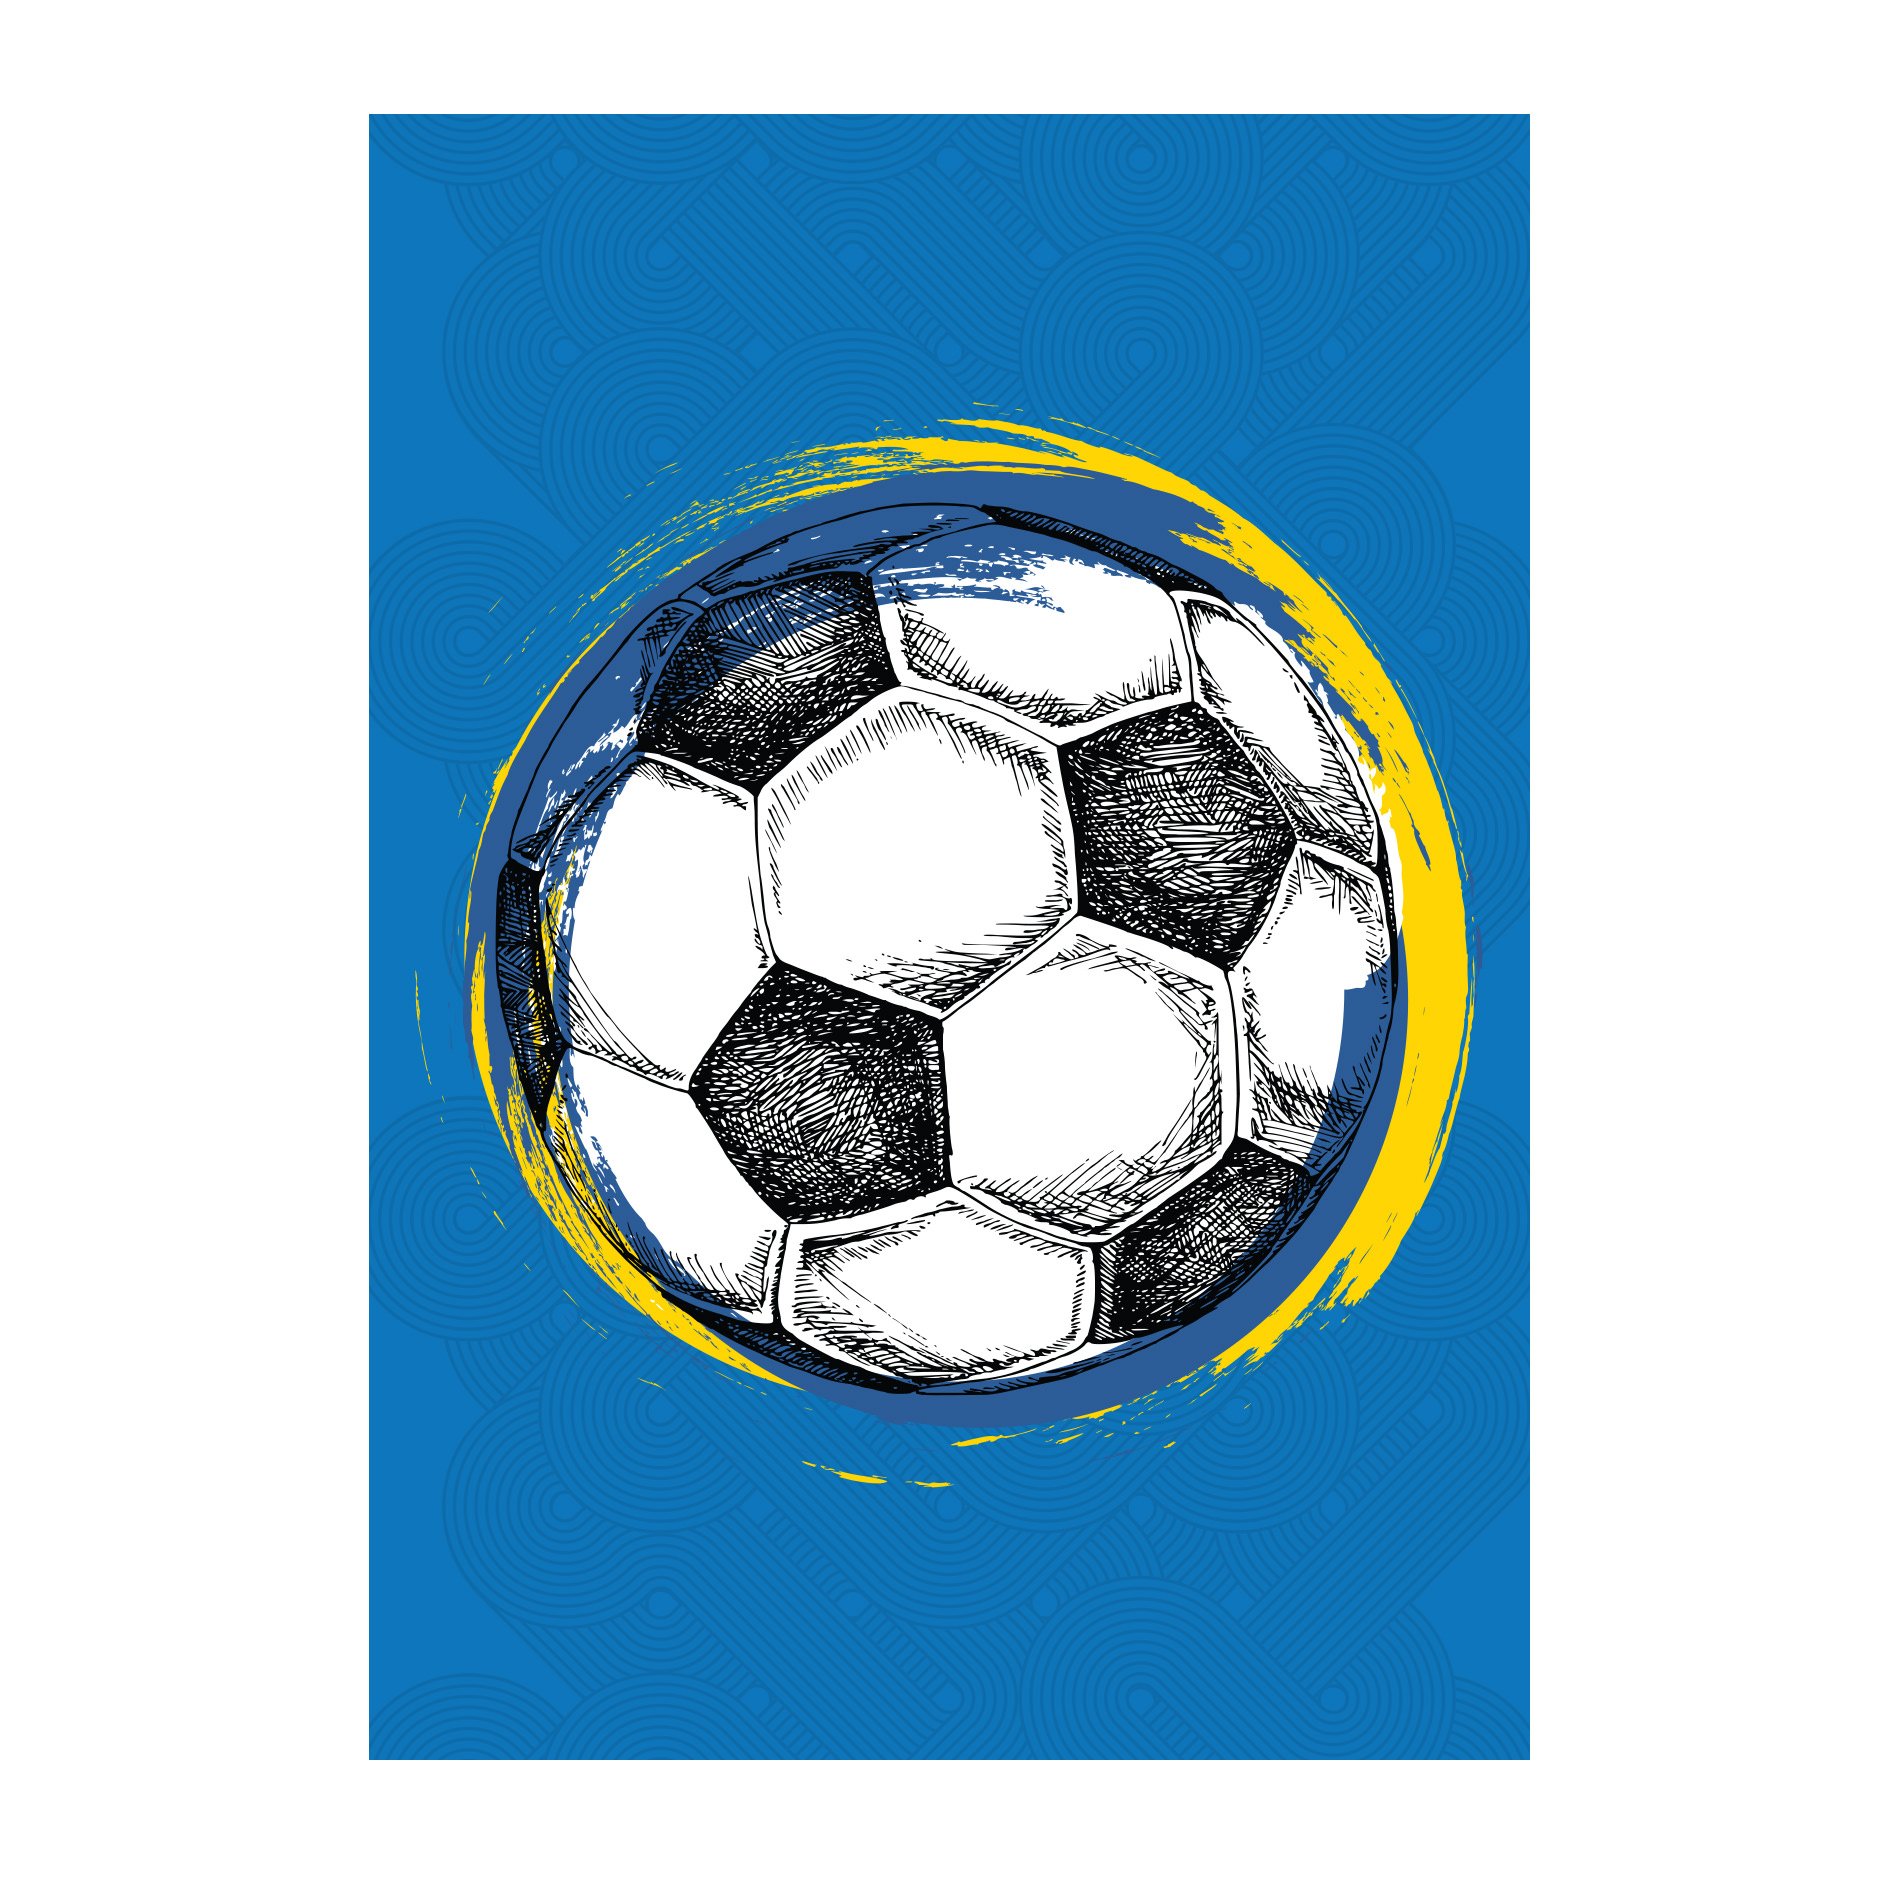 Placa Decorativa MDF Bola de Futebol Fundo Azul 30x40cm